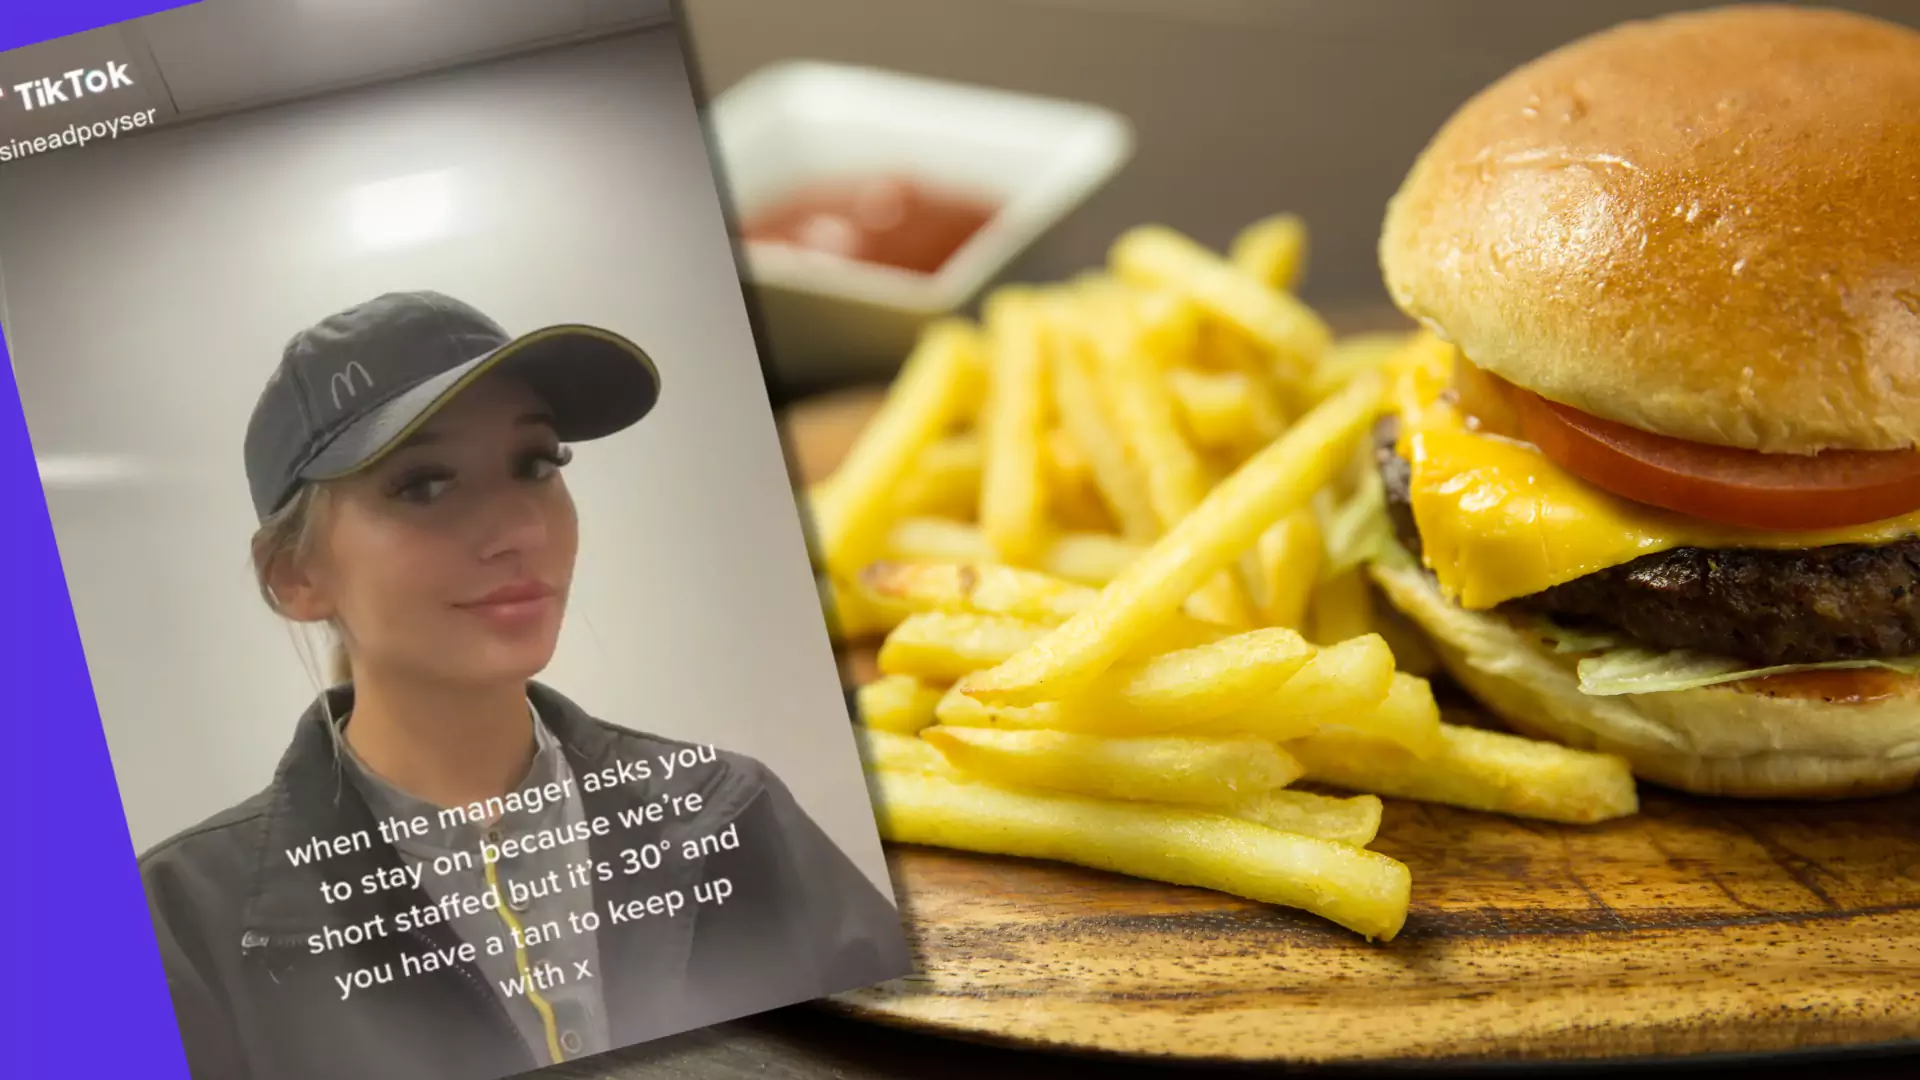 Pracowniczka słynnego fast foodu opisała absurdalne wymagania klientów. "Popłakałabym się"